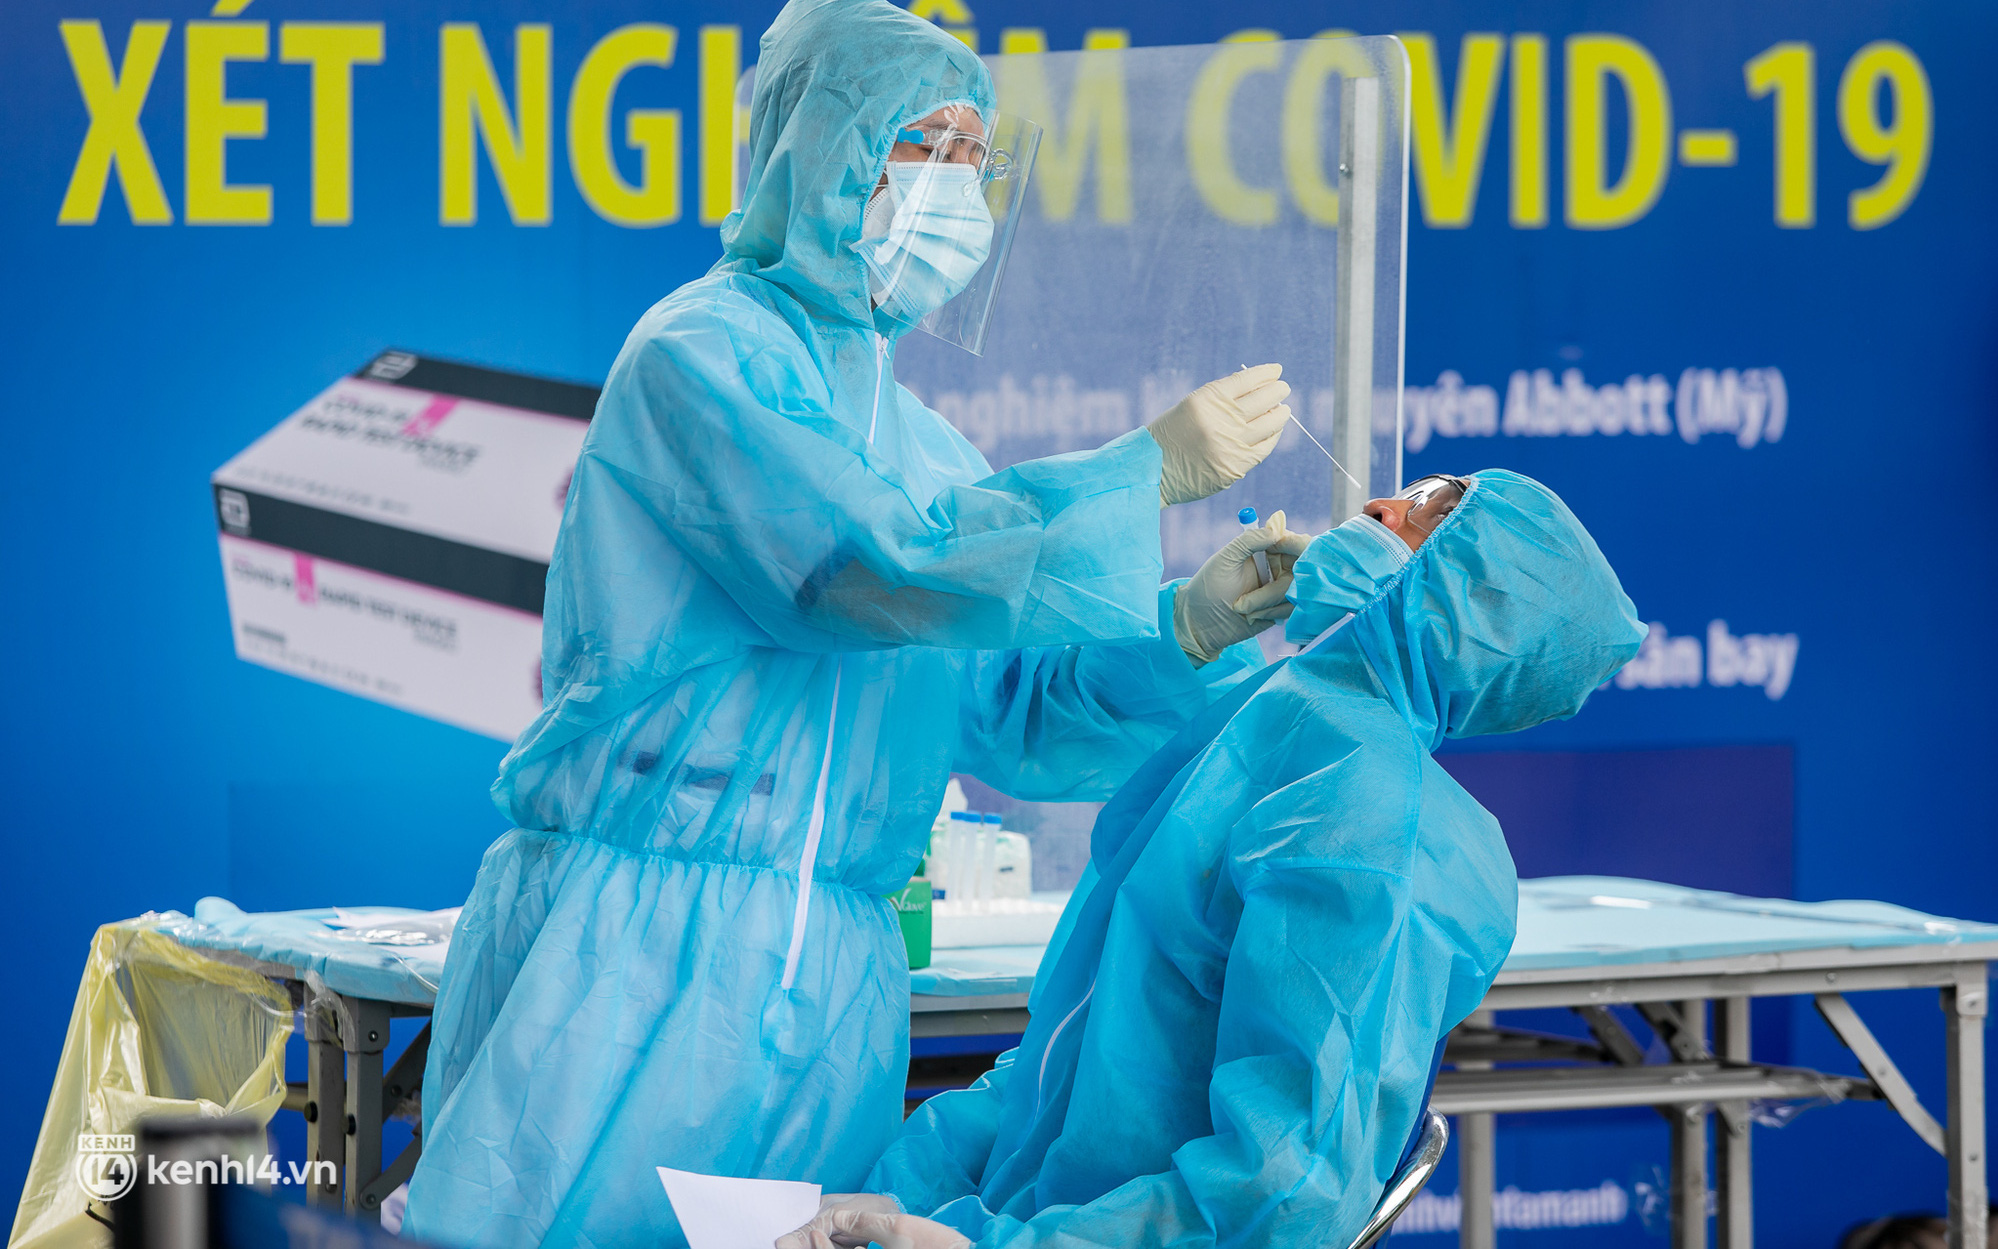 Diễn biến dịch ngày 28/12: Hà Nội tiếp tục ghi nhận số ca mắc Covid-19 tăng kỷ lục; 4 người Nghệ An chung chuyến bay với người nhiễm Omicron đầu tiên tại Việt Nam